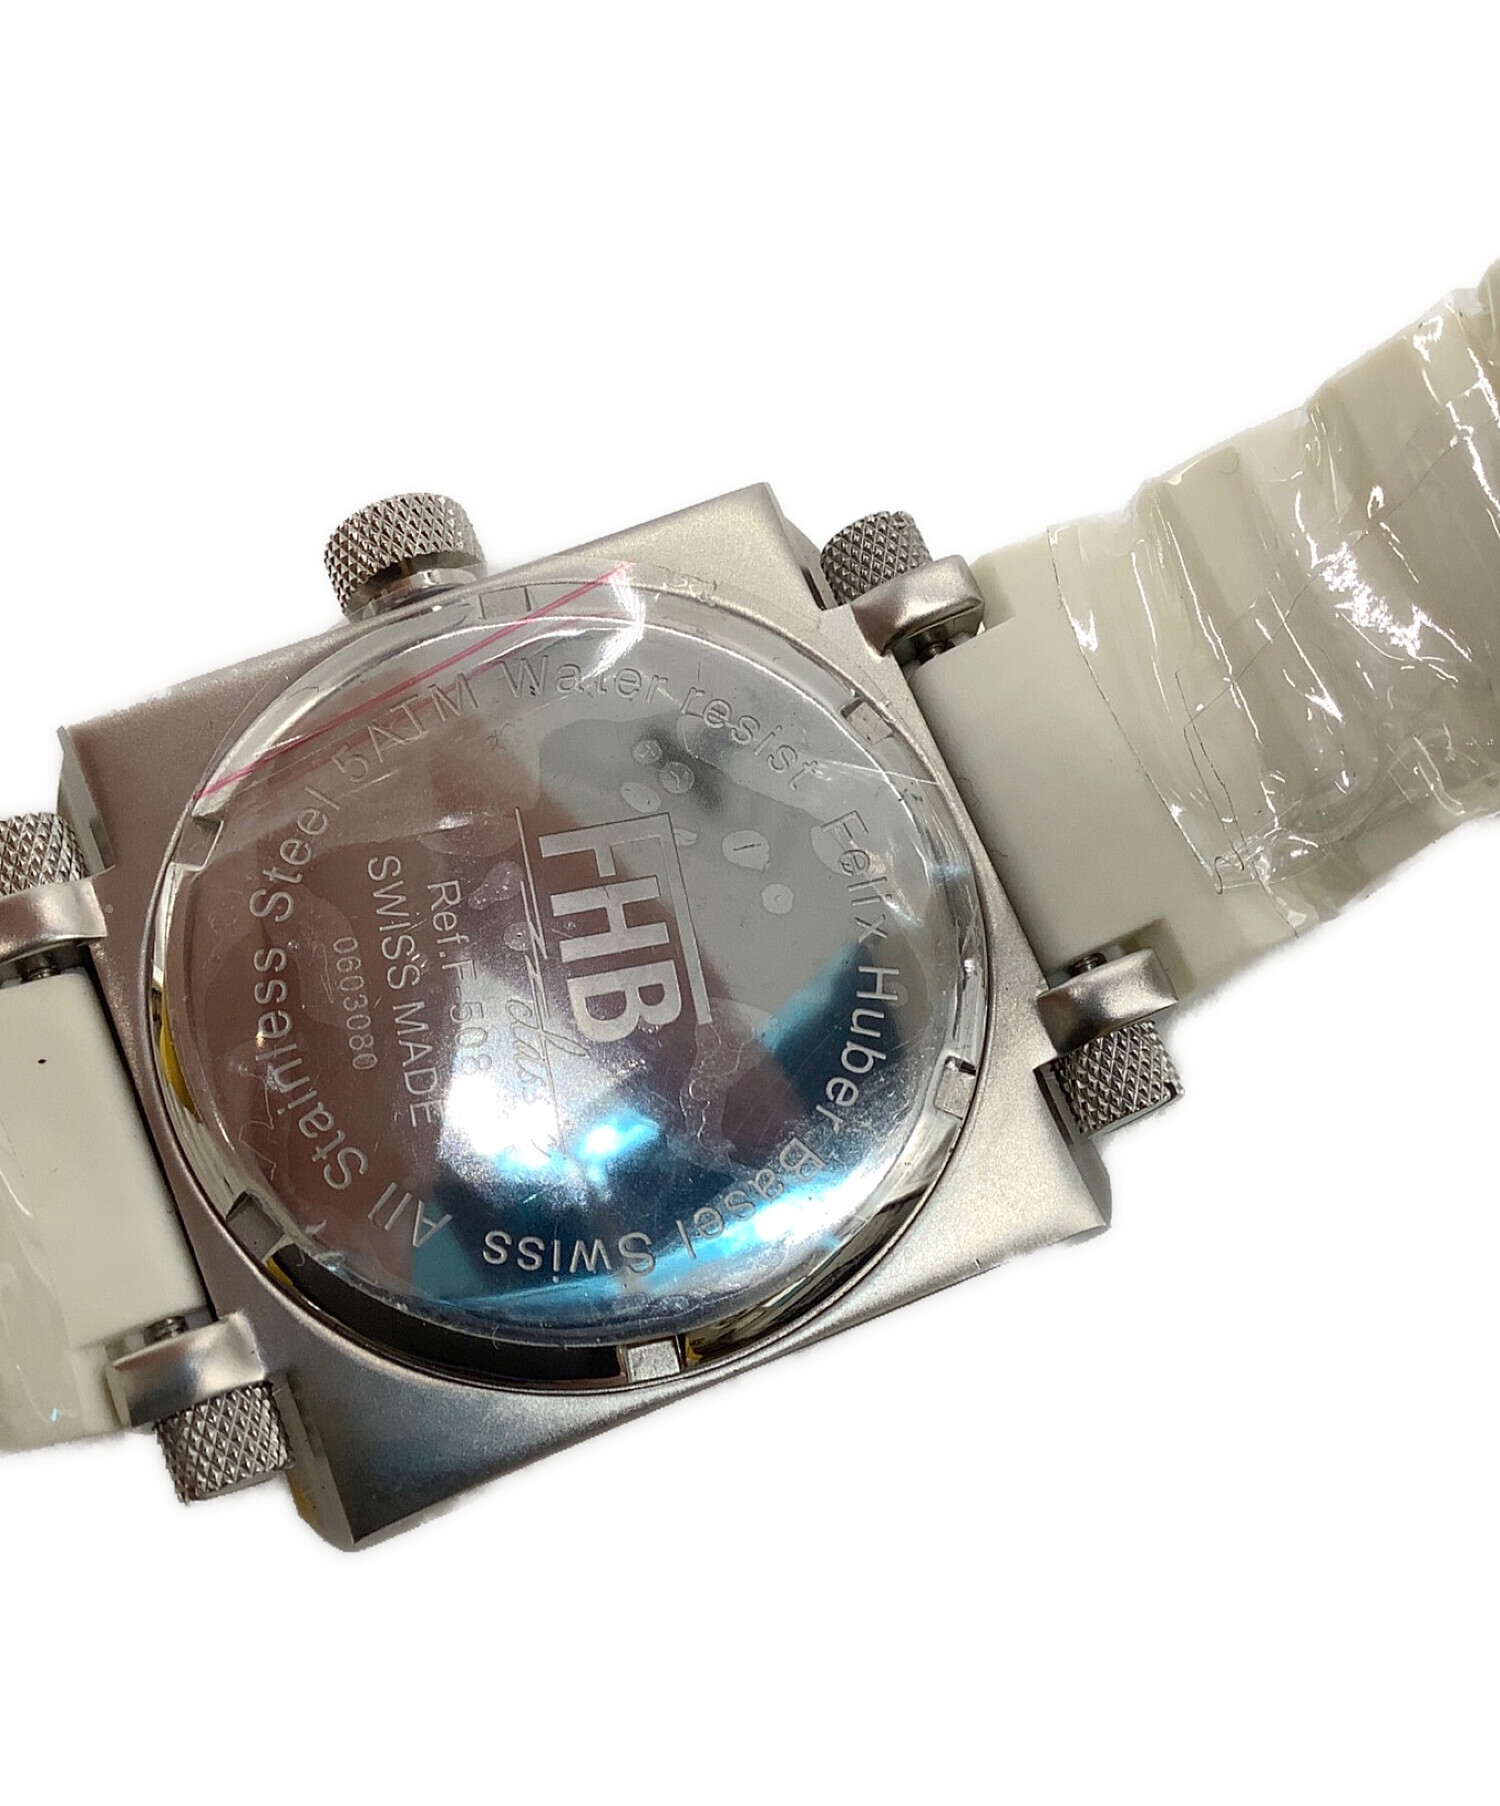 FHB classic (エフエイチビークラシック) 腕時計 未使用品